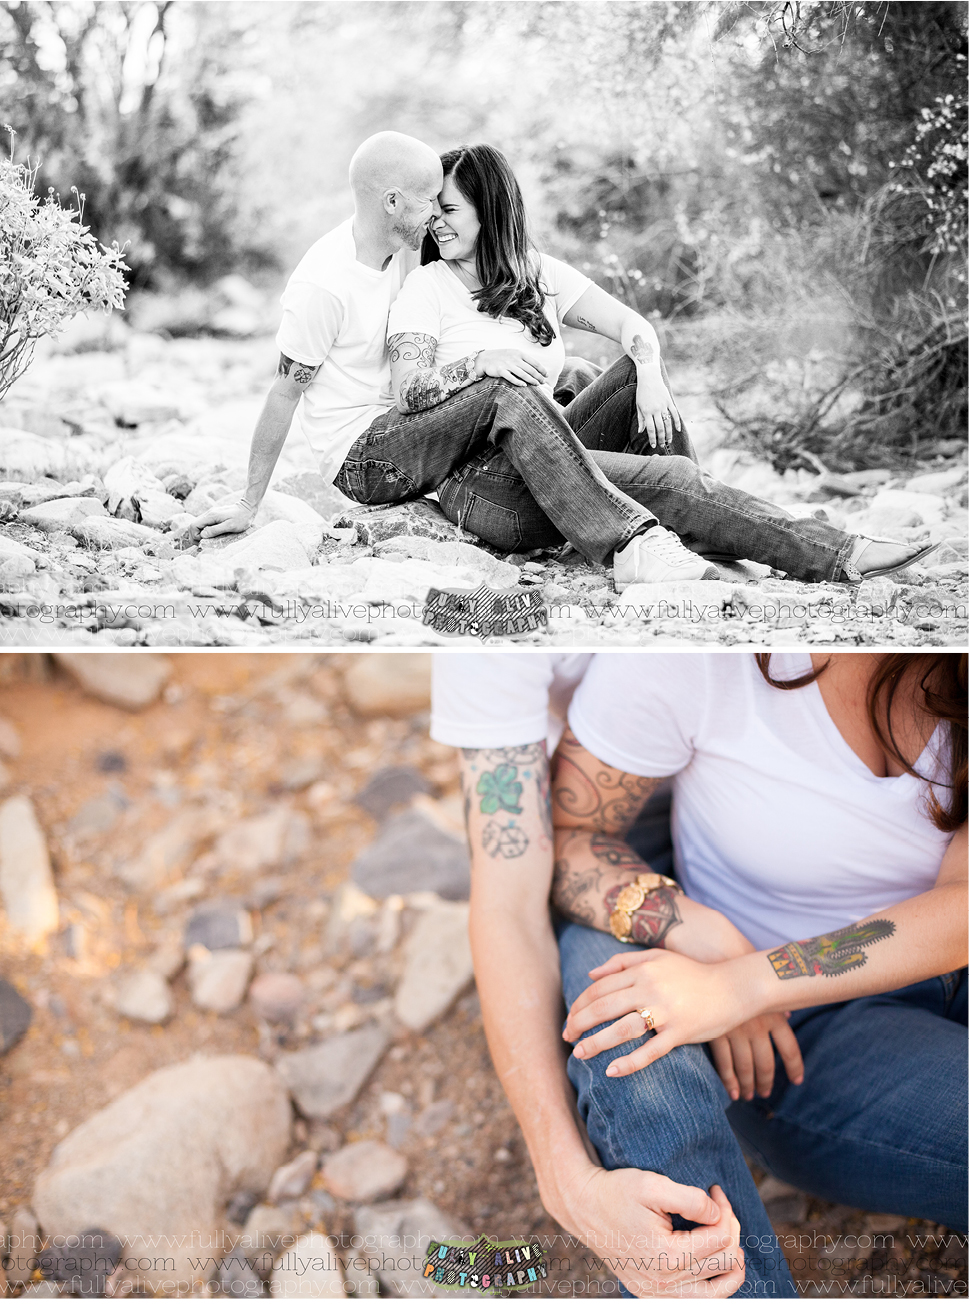 Fully Alive Photography | Scottsdale Engagement Session  | Justin + Amanda